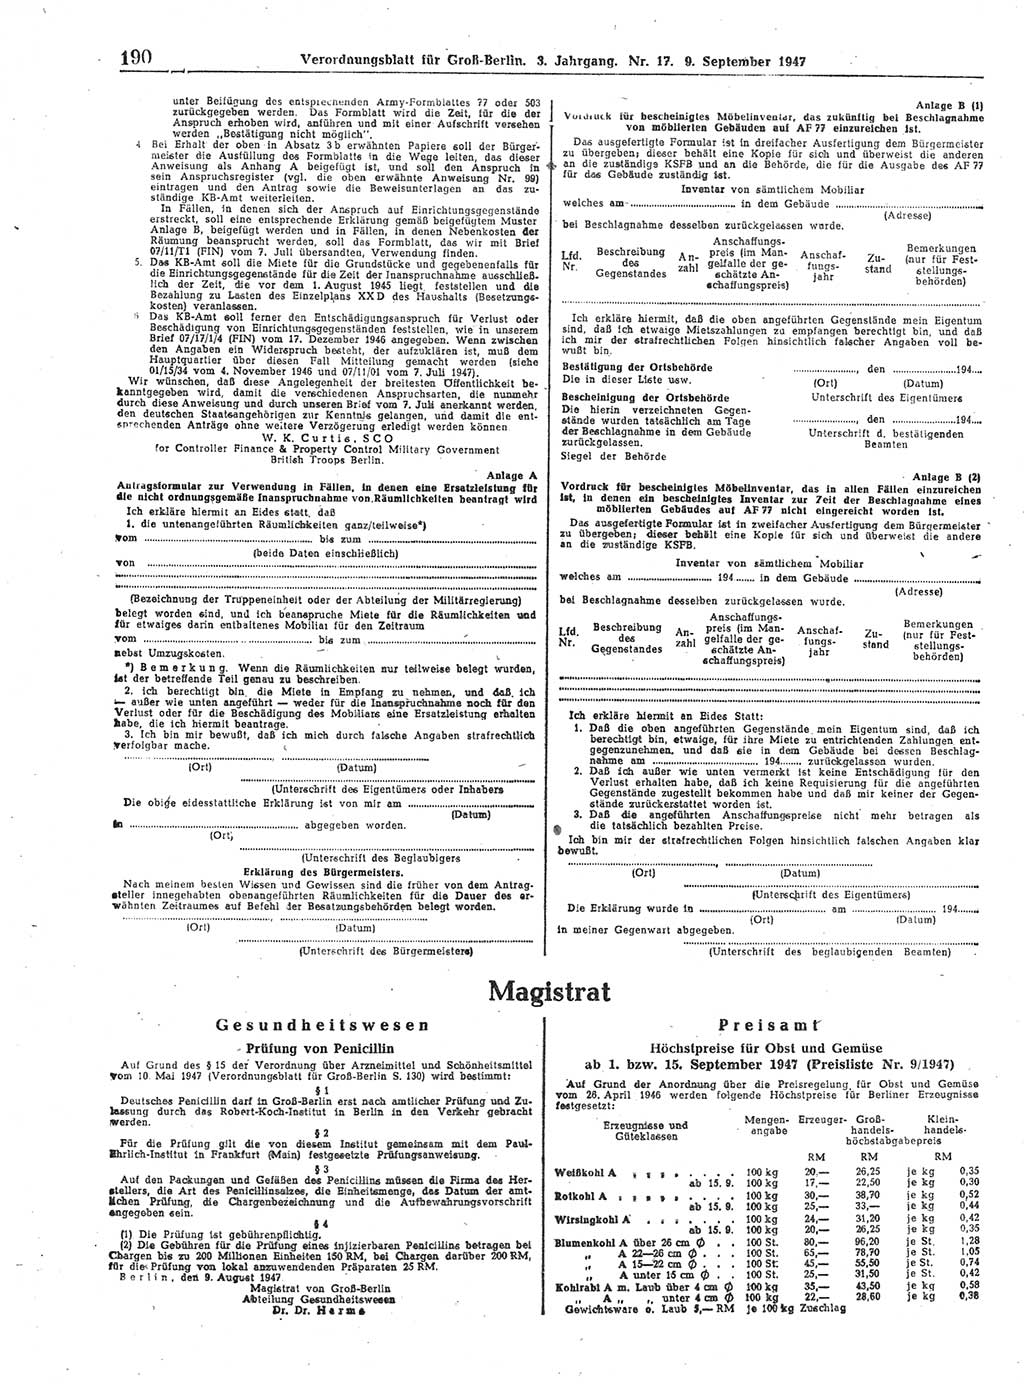 Verordnungsblatt (VOBl.) für Groß-Berlin 1947, Seite 190 (VOBl. Bln. 1947, S. 190)